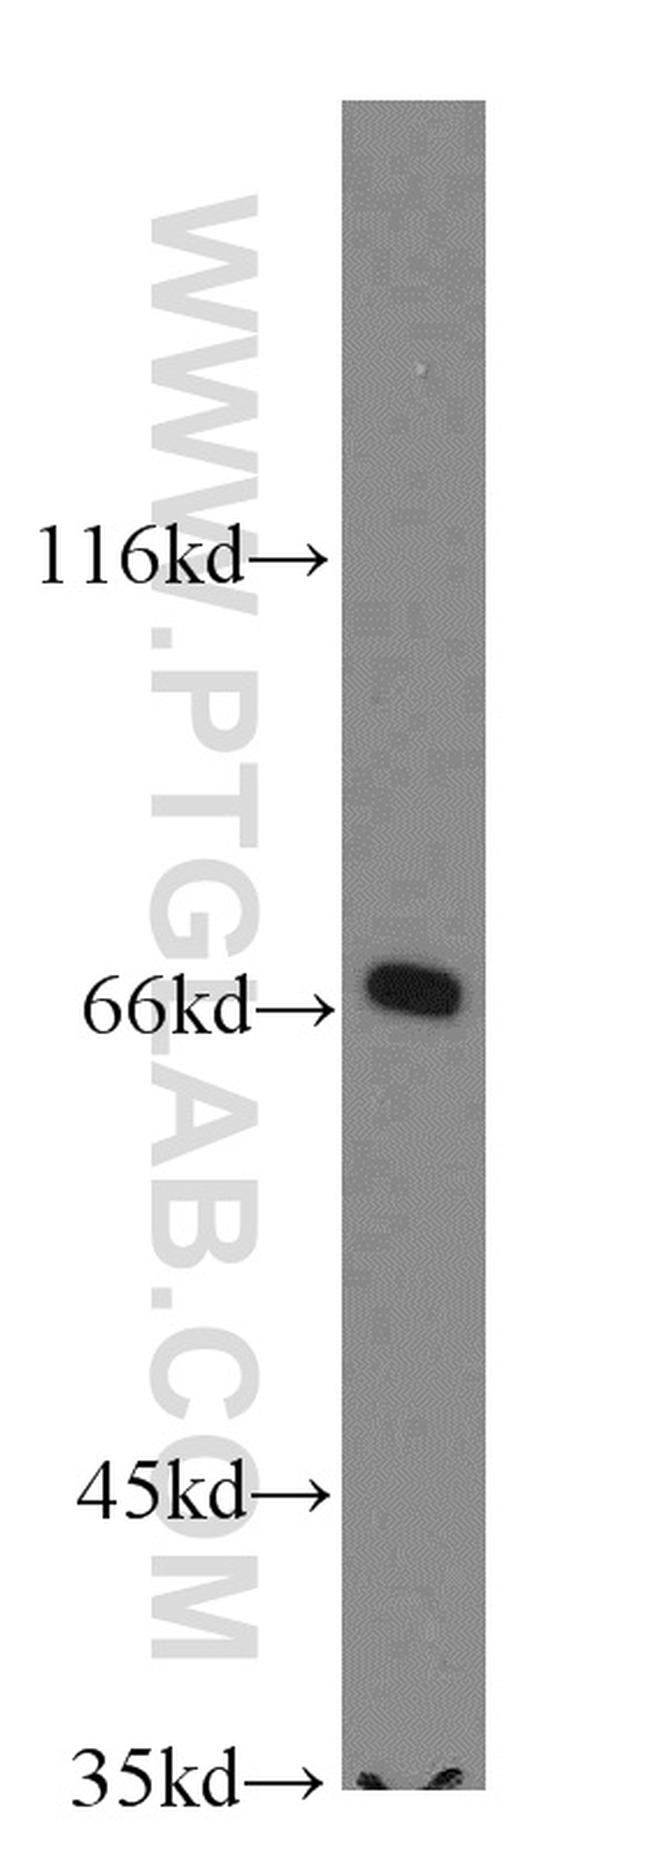 SLC27A3 Antibody in Western Blot (WB)